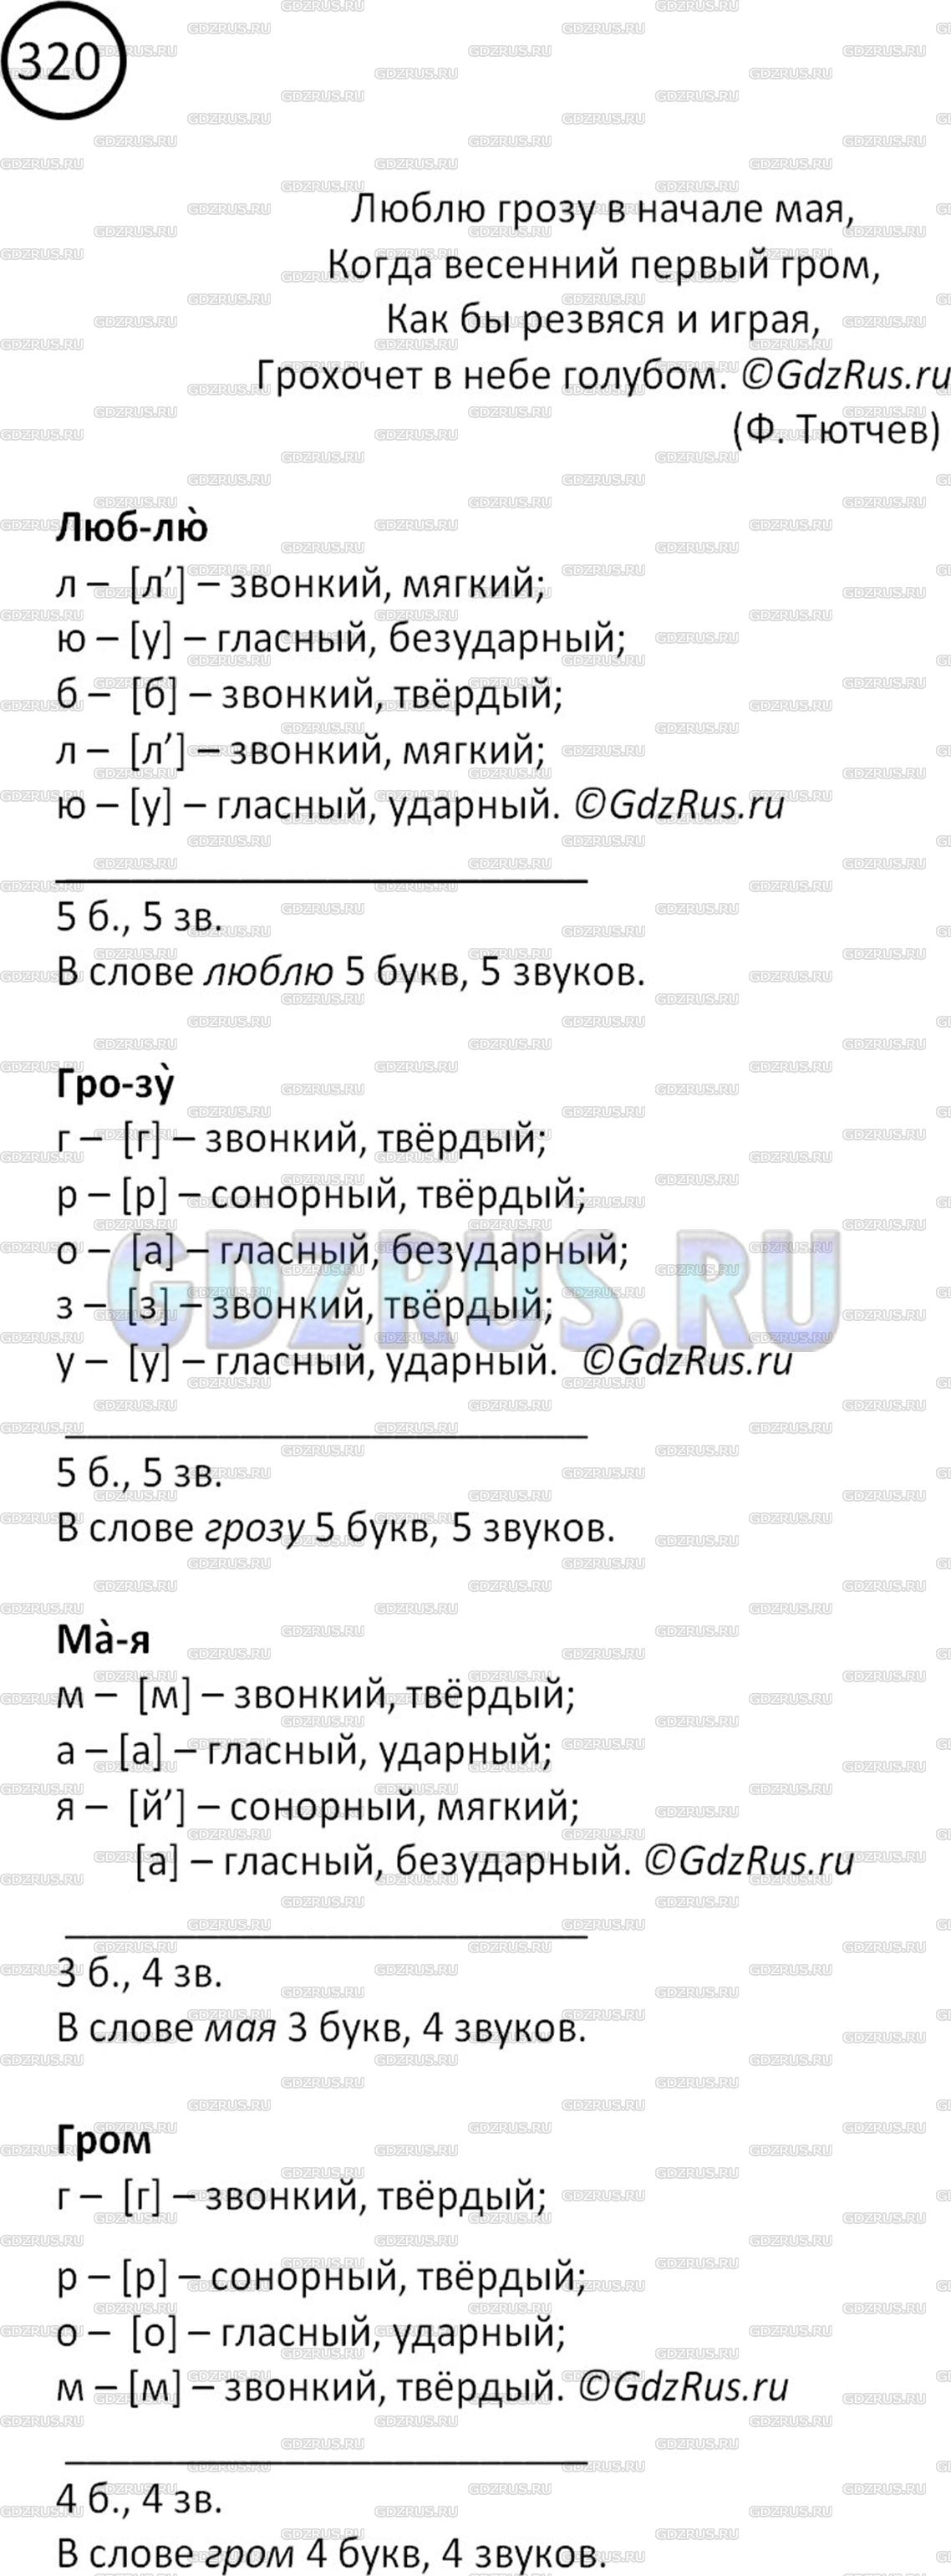 Фото картинка ответа 2: Упражнение № 320 из ГДЗ по Русскому языку 5 класс: Ладыженская